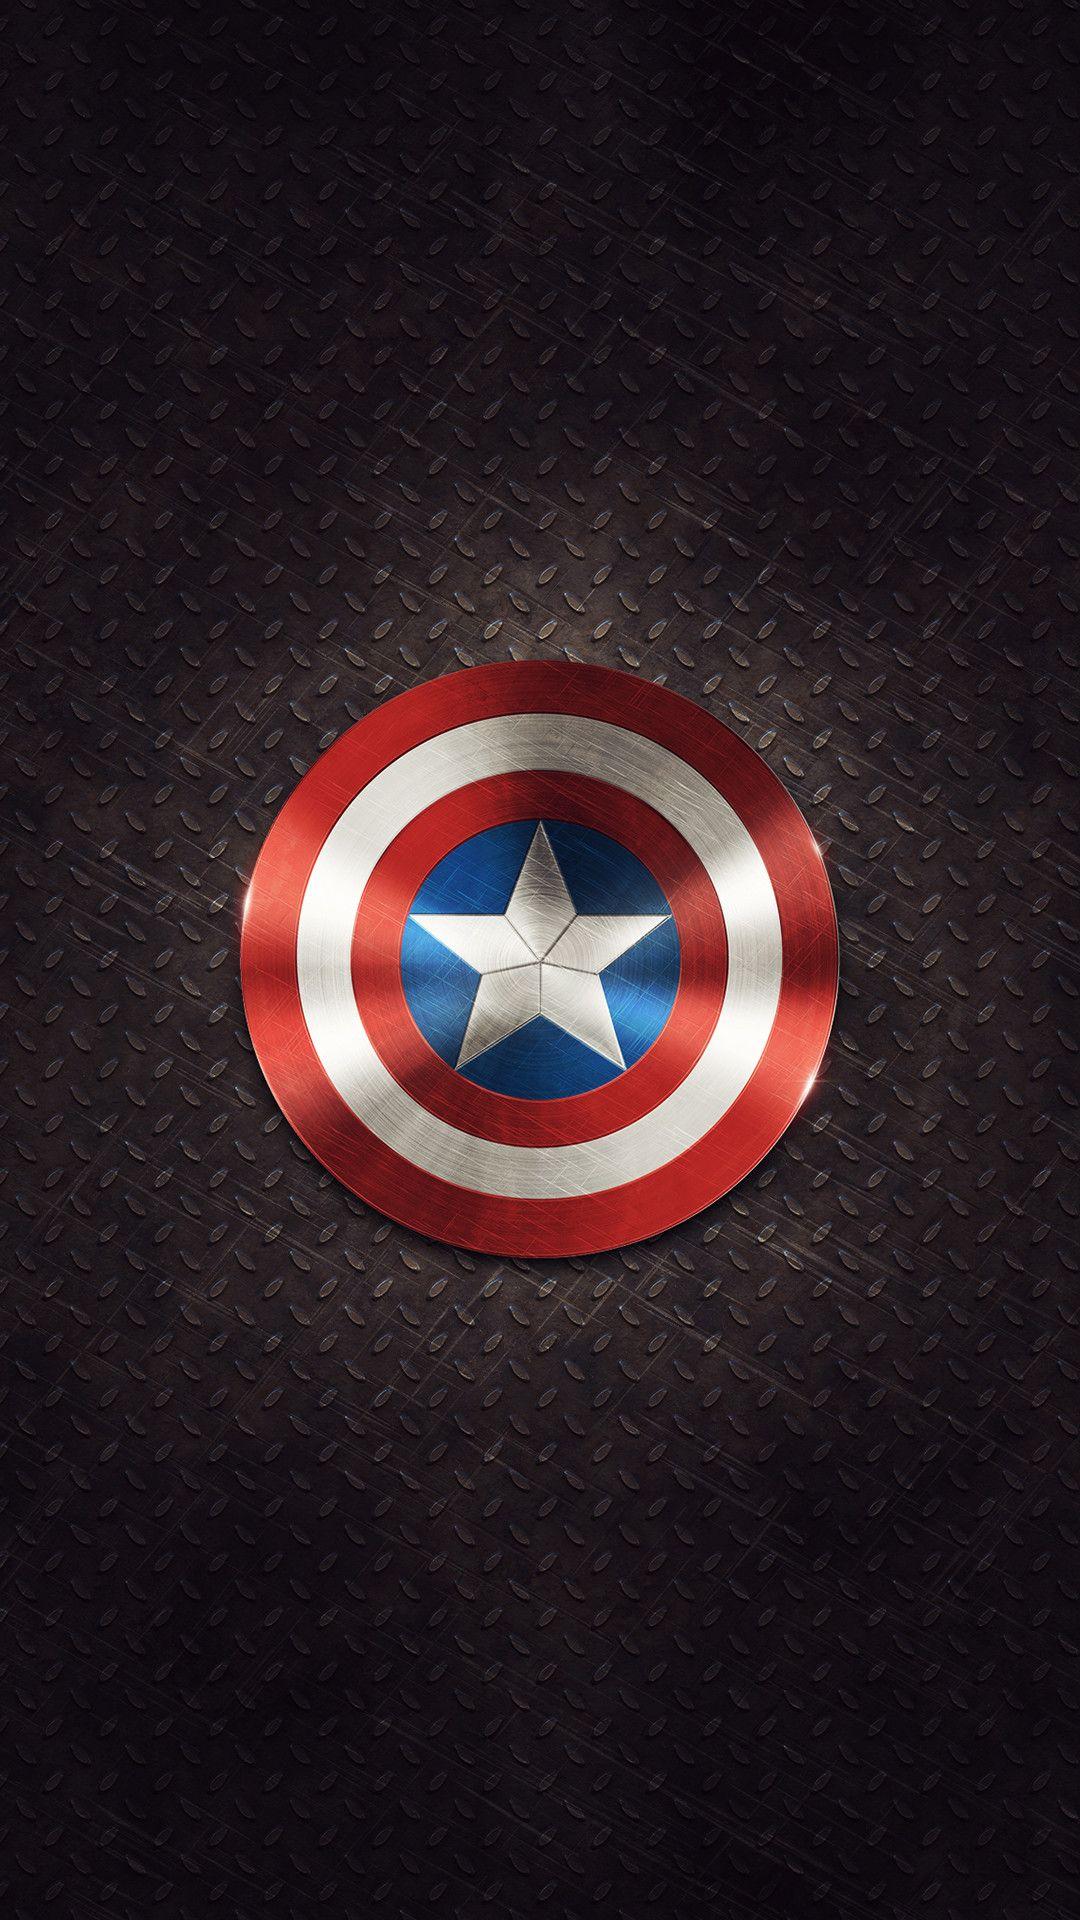 Captain America wallpaper by nascimentART on DeviantArt